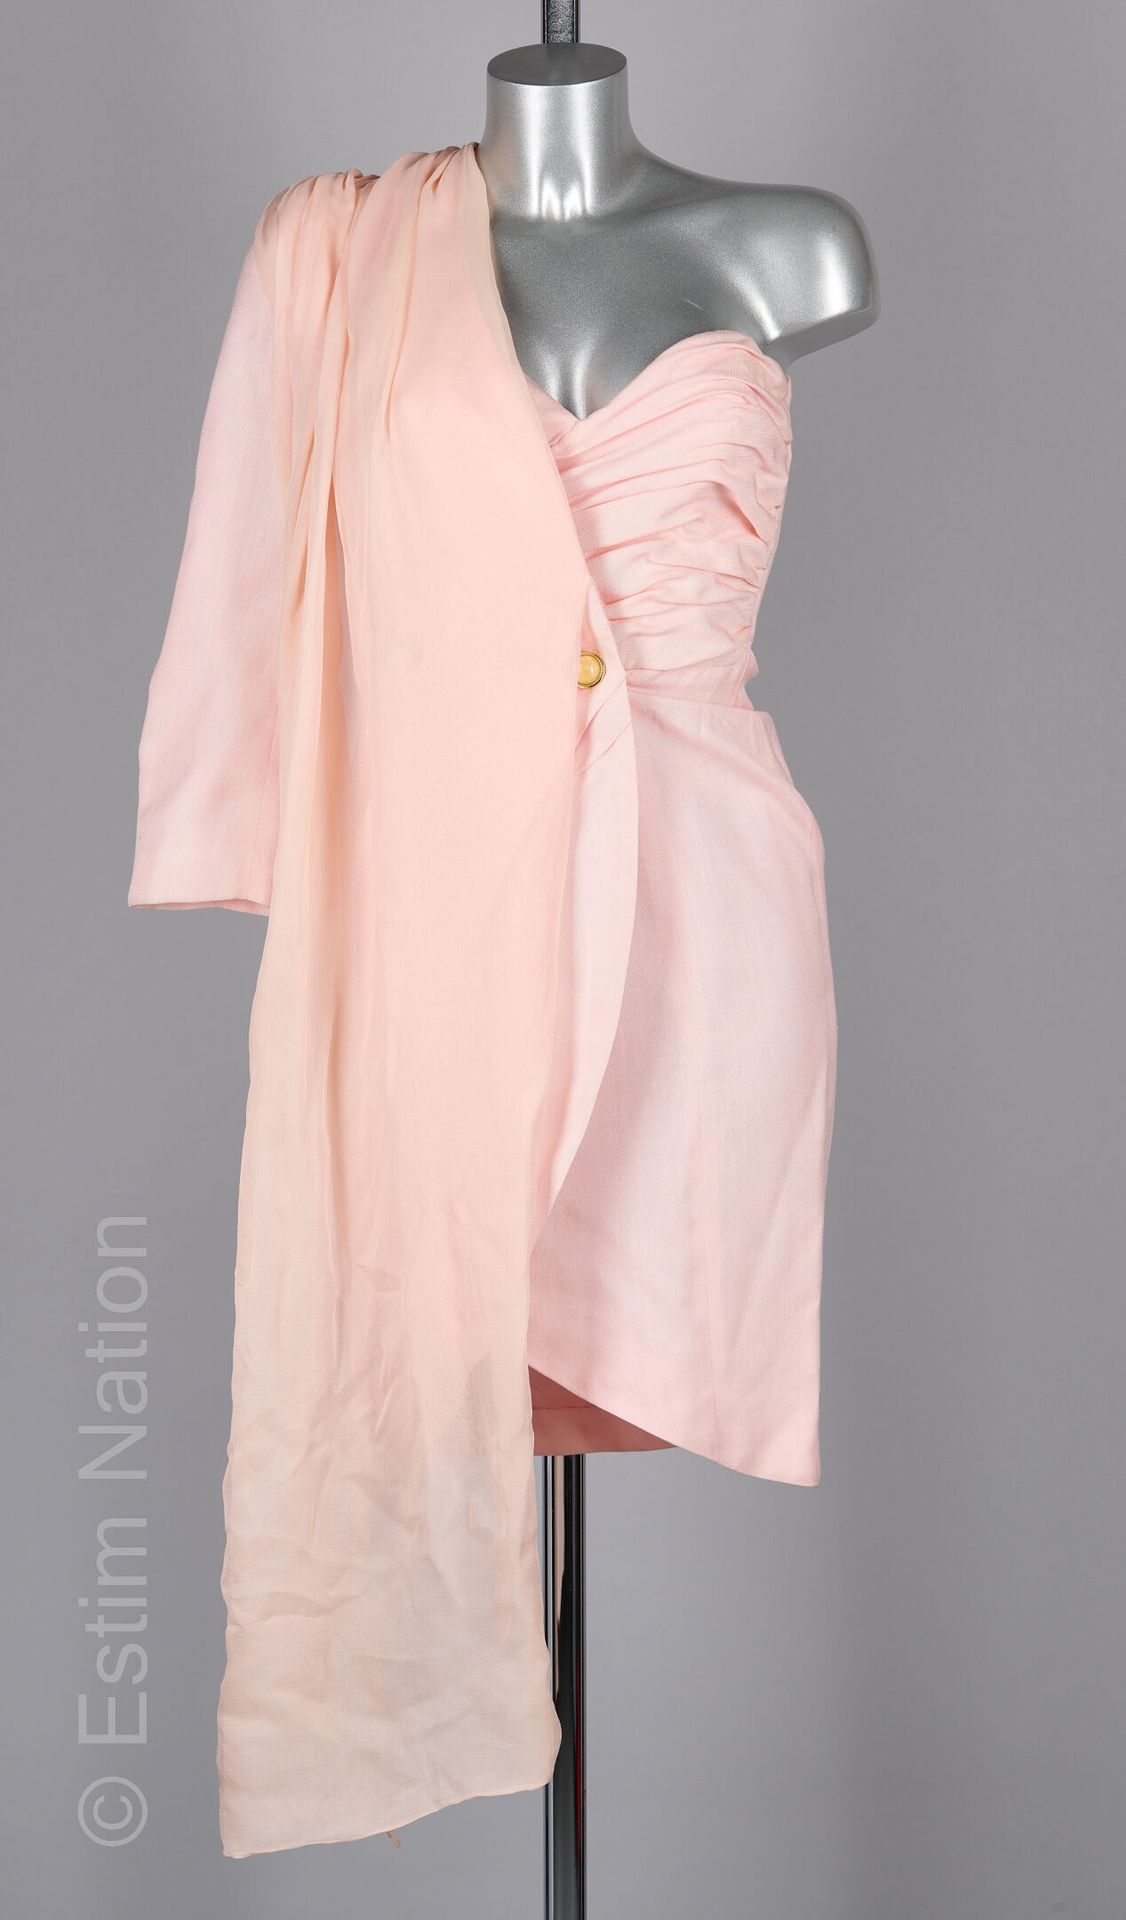 JIKI MONTE CARLO CREATIONS 粉红色羊毛和棉质晚礼服，一个不对称的袖子，带胸饰的垂坠上衣，有两个环绕纽扣的裙子，袖子颜色的丝质雪纺围巾（&hellip;